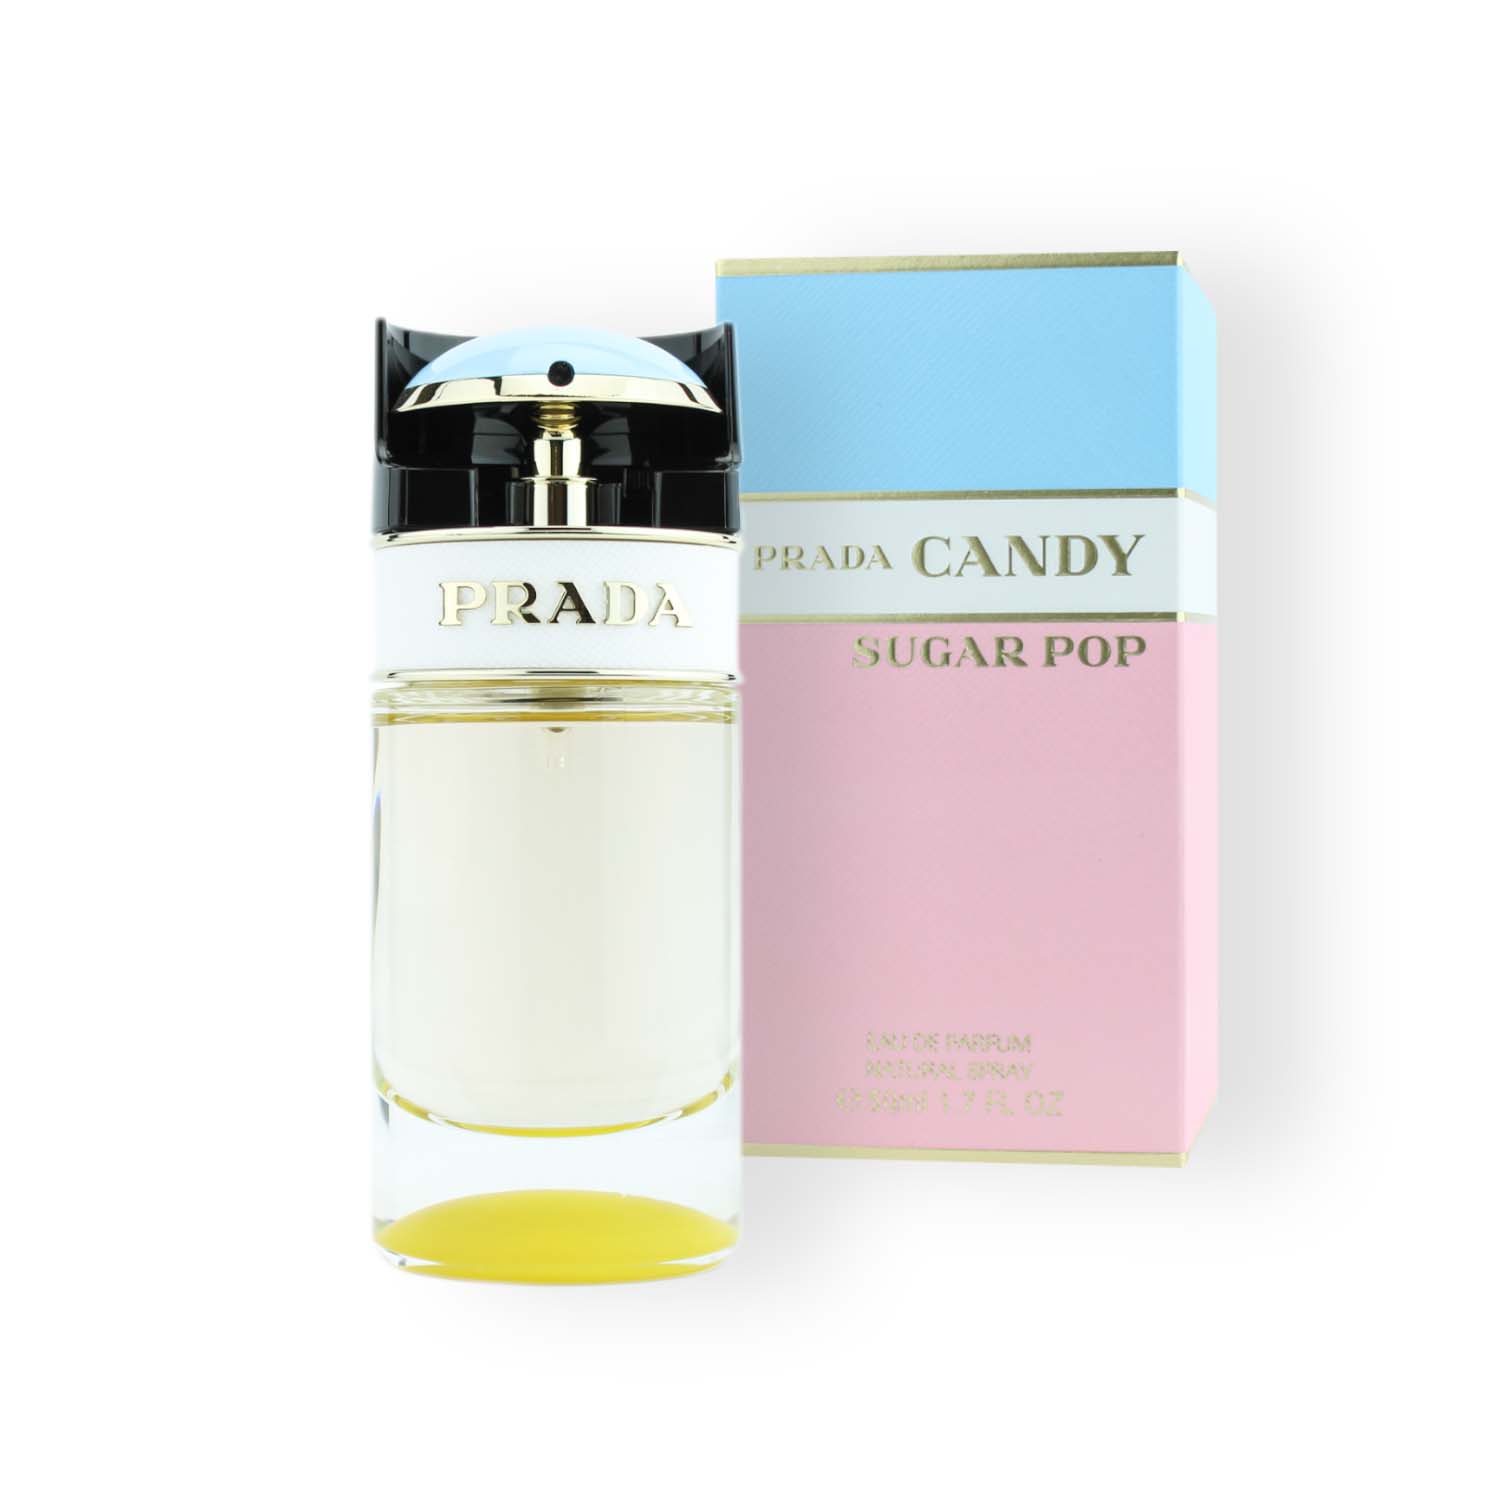 Prada Candy Sugar Pop Eau de Parfum 50ml